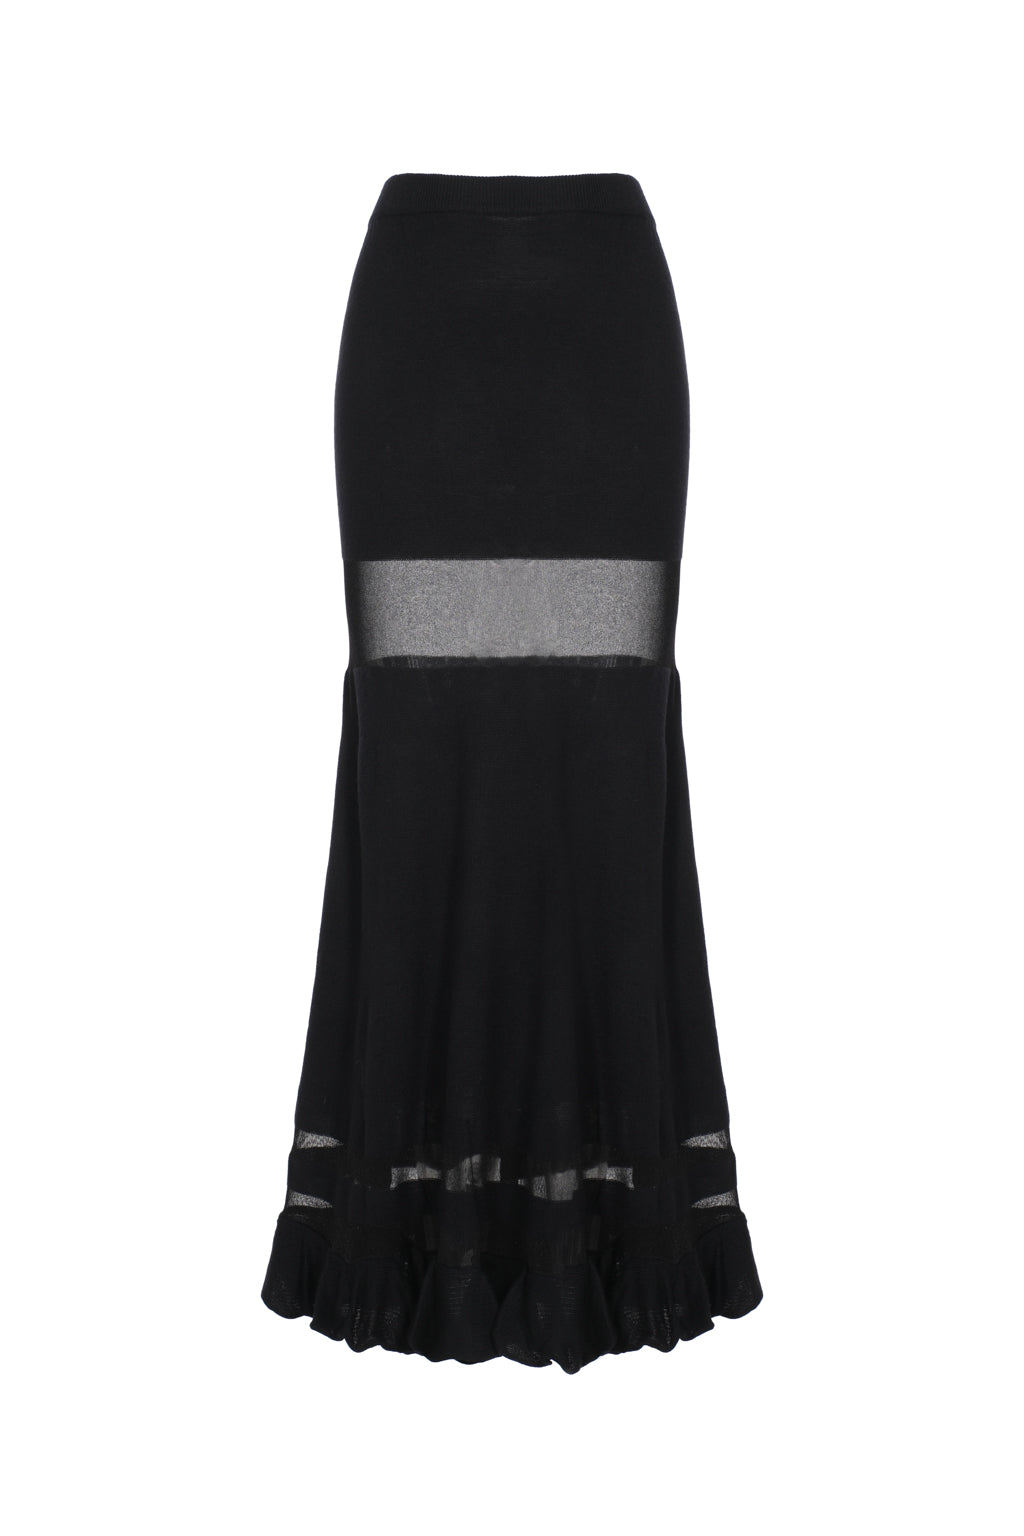 Opaque knit skirt - black